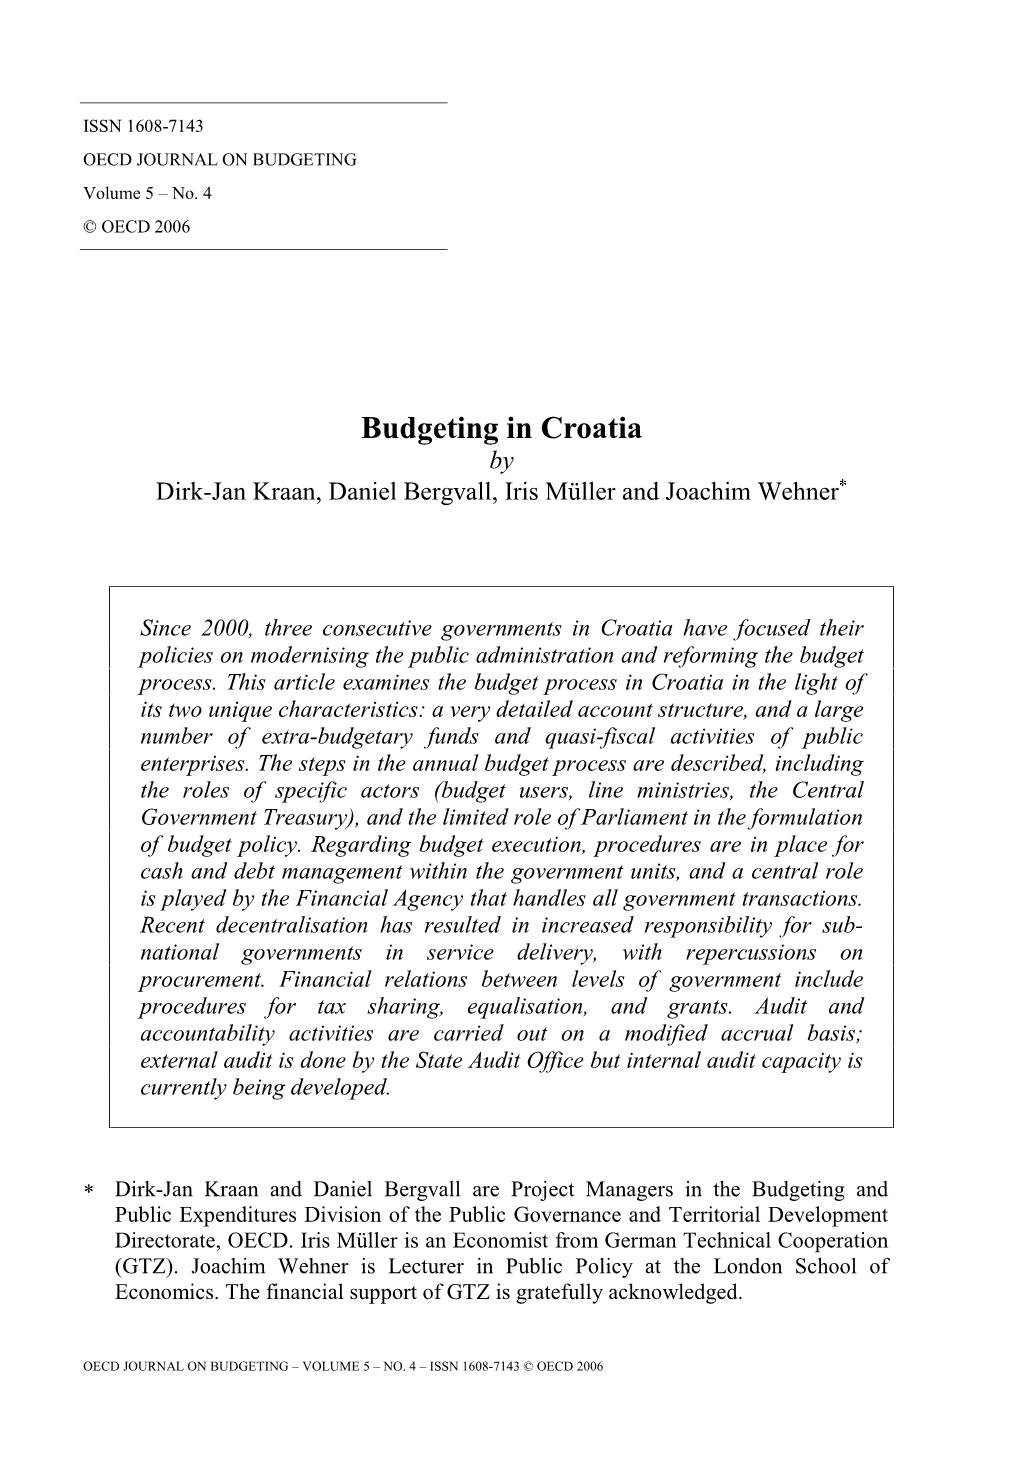 Budgeting in Croatia by Dirk-Jan Kraan, Daniel Bergvall, Iris Müller and Joachim Wehner